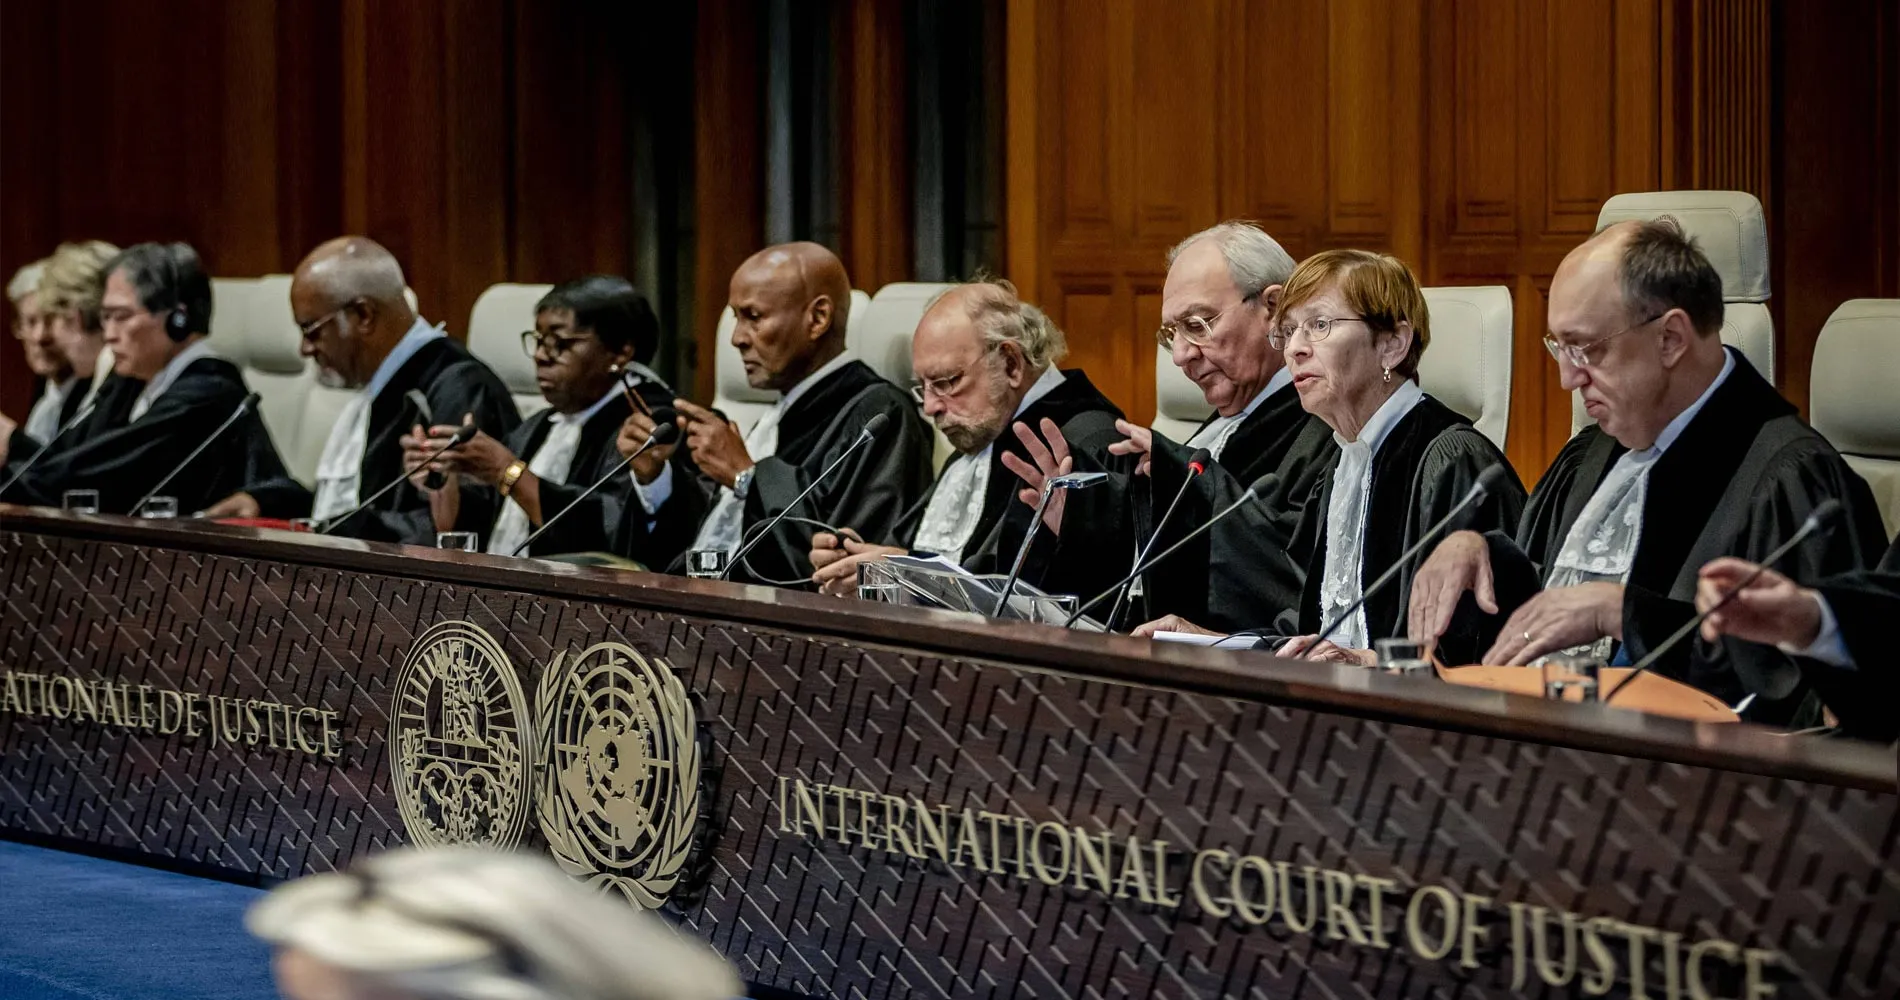 Voto pro-Israel en la CIJ de Uganda: ¿Una impartición de justicia discriminatoria?